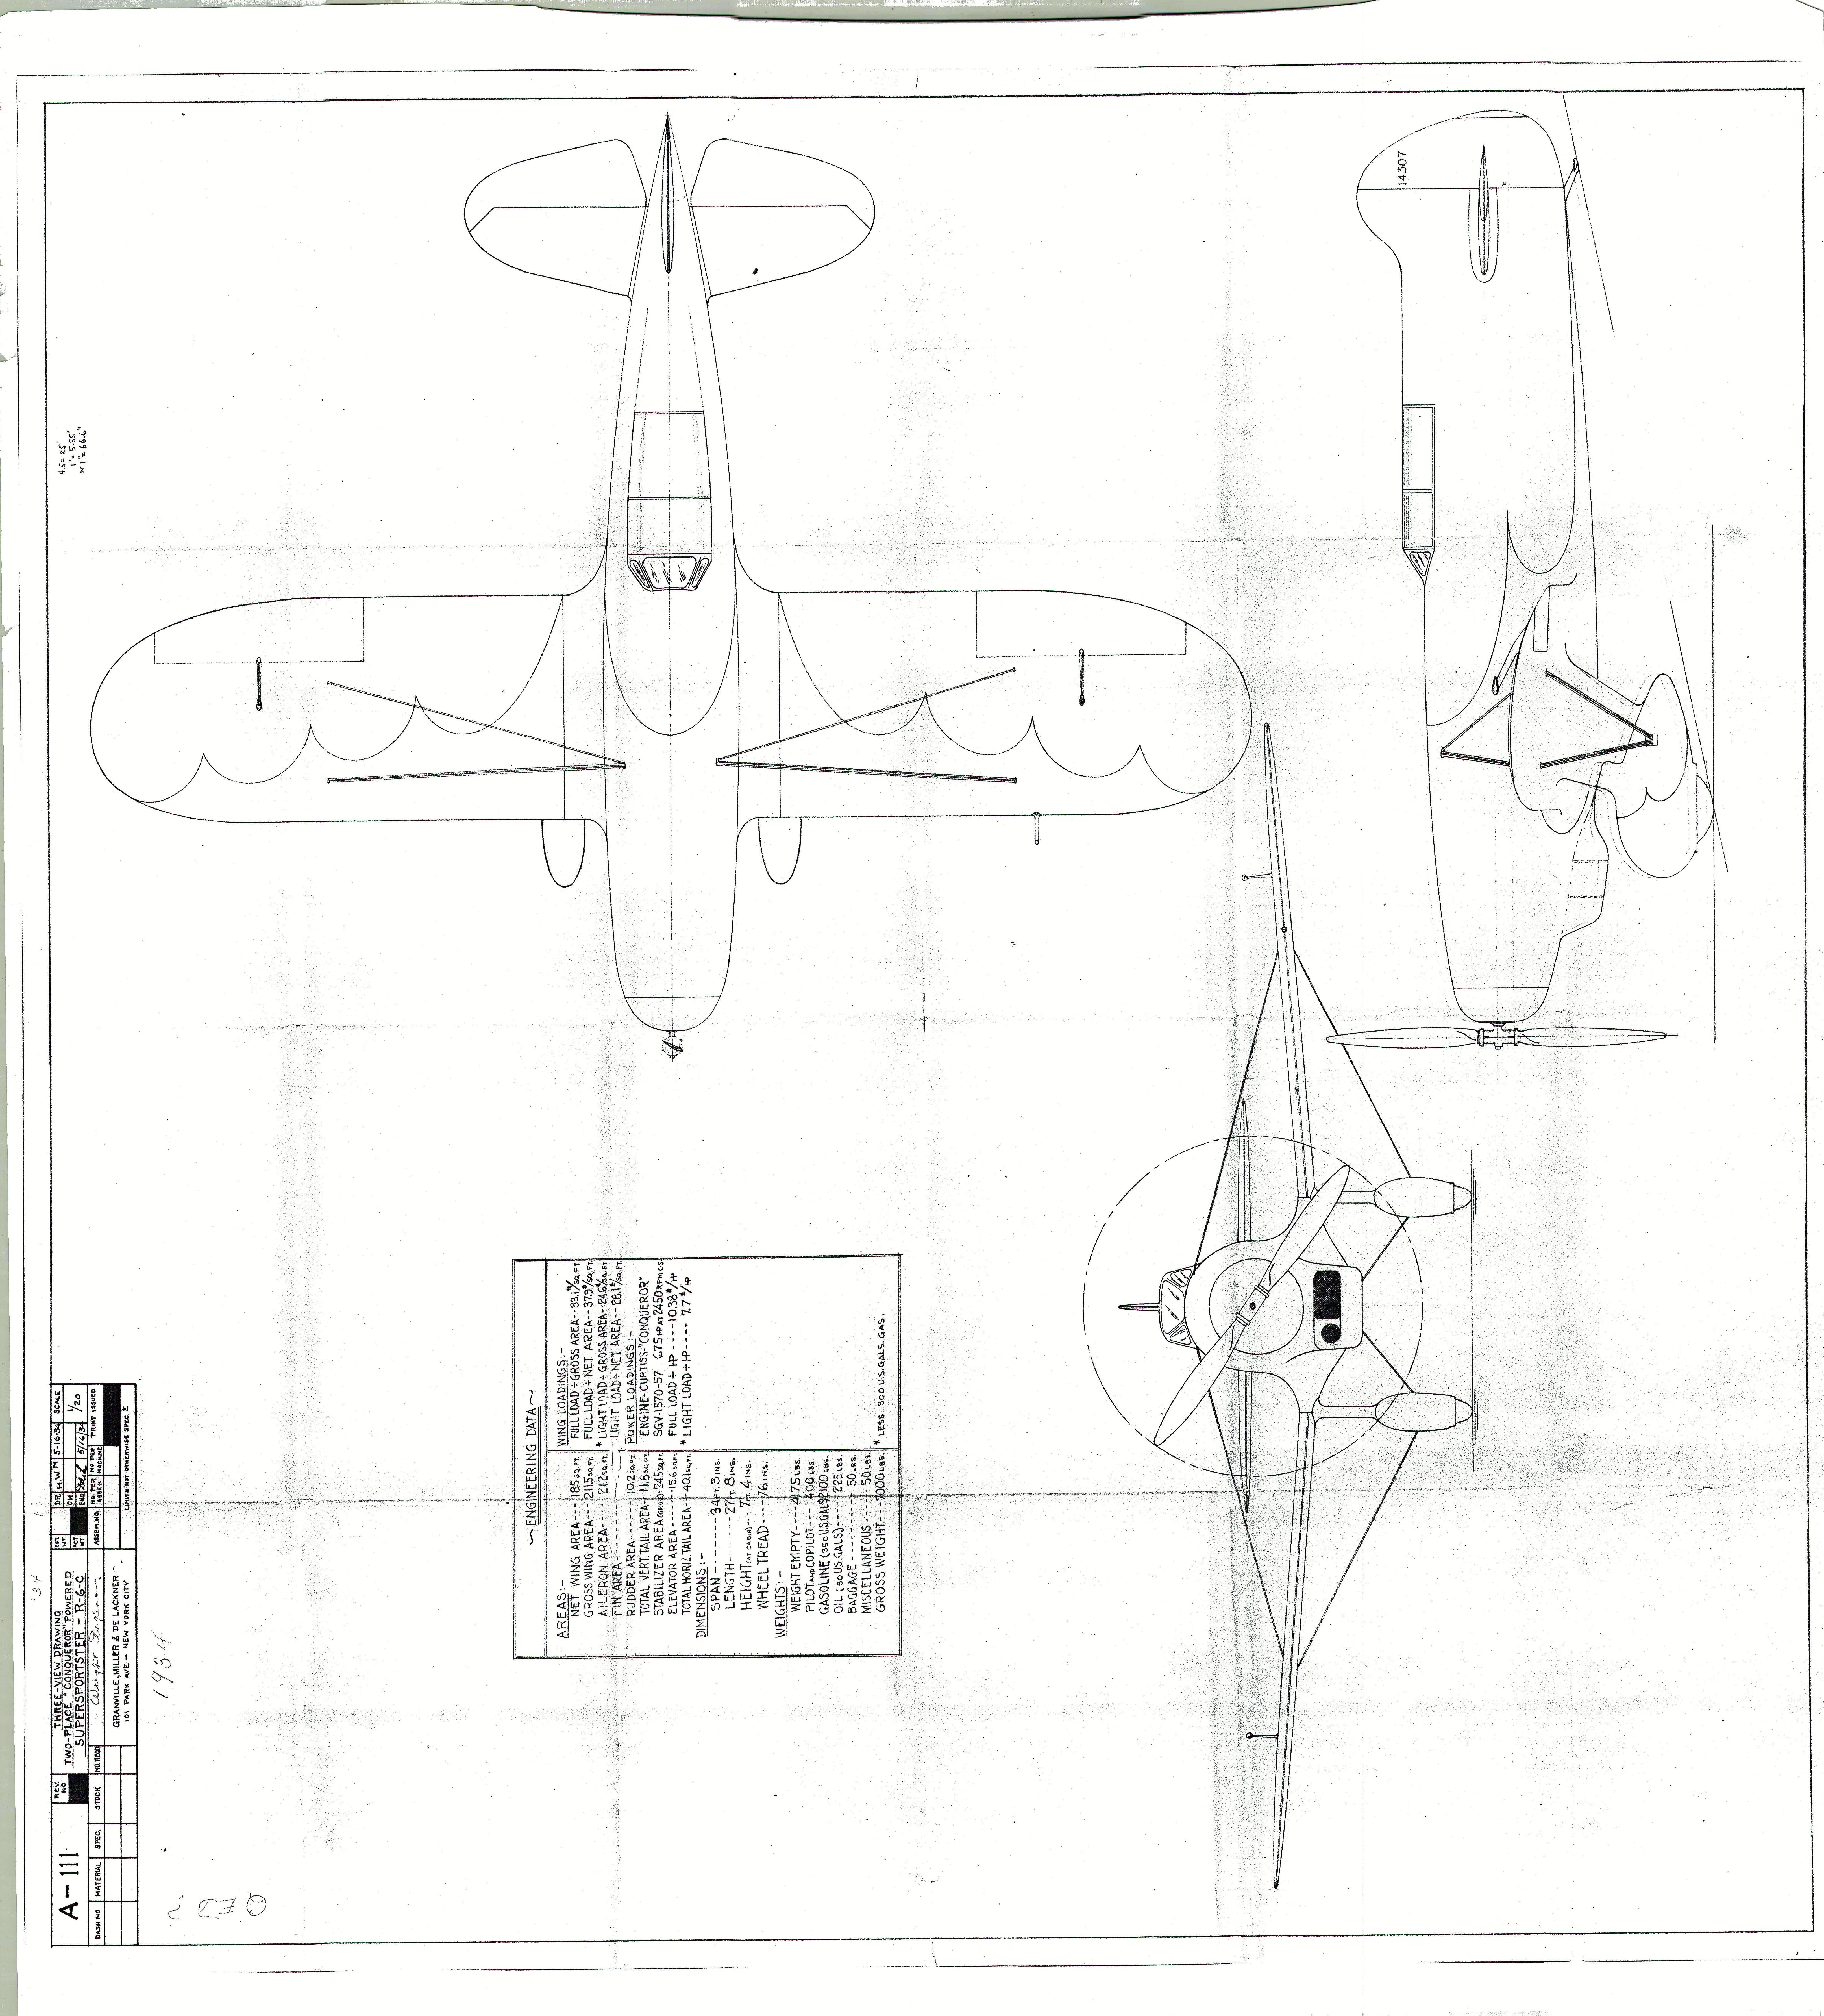 r6c-supersportster-general-arrangement-drawing